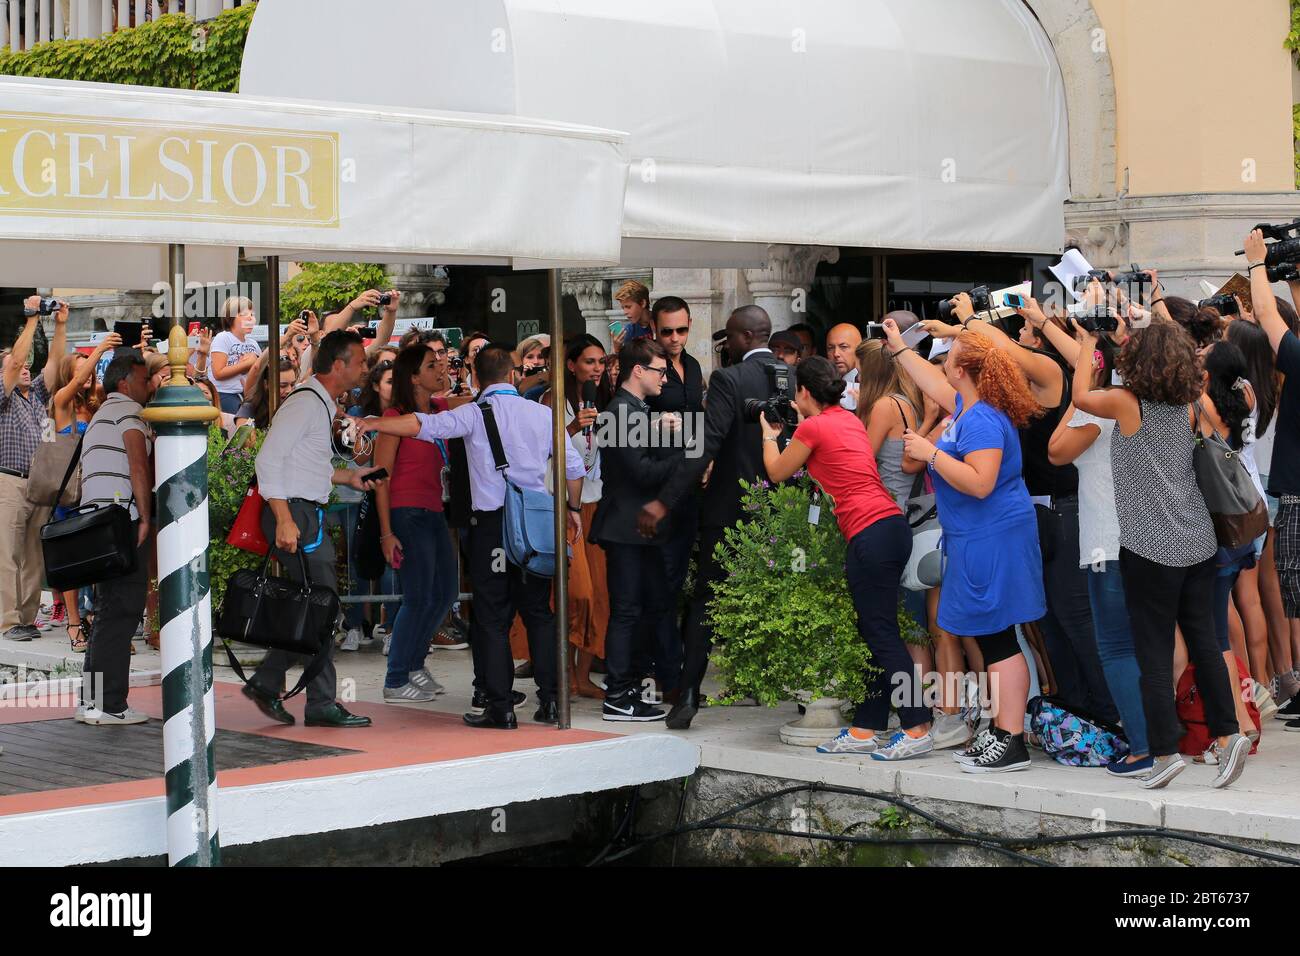 VENEZIA, ITALIA - 01 SETTEMBRE: I fan di Daniel Radcliffe partecipano al giorno 5 del 70° Festival del Cinema di Venezia il 1° settembre 2013 a Venezia, Italia Foto Stock